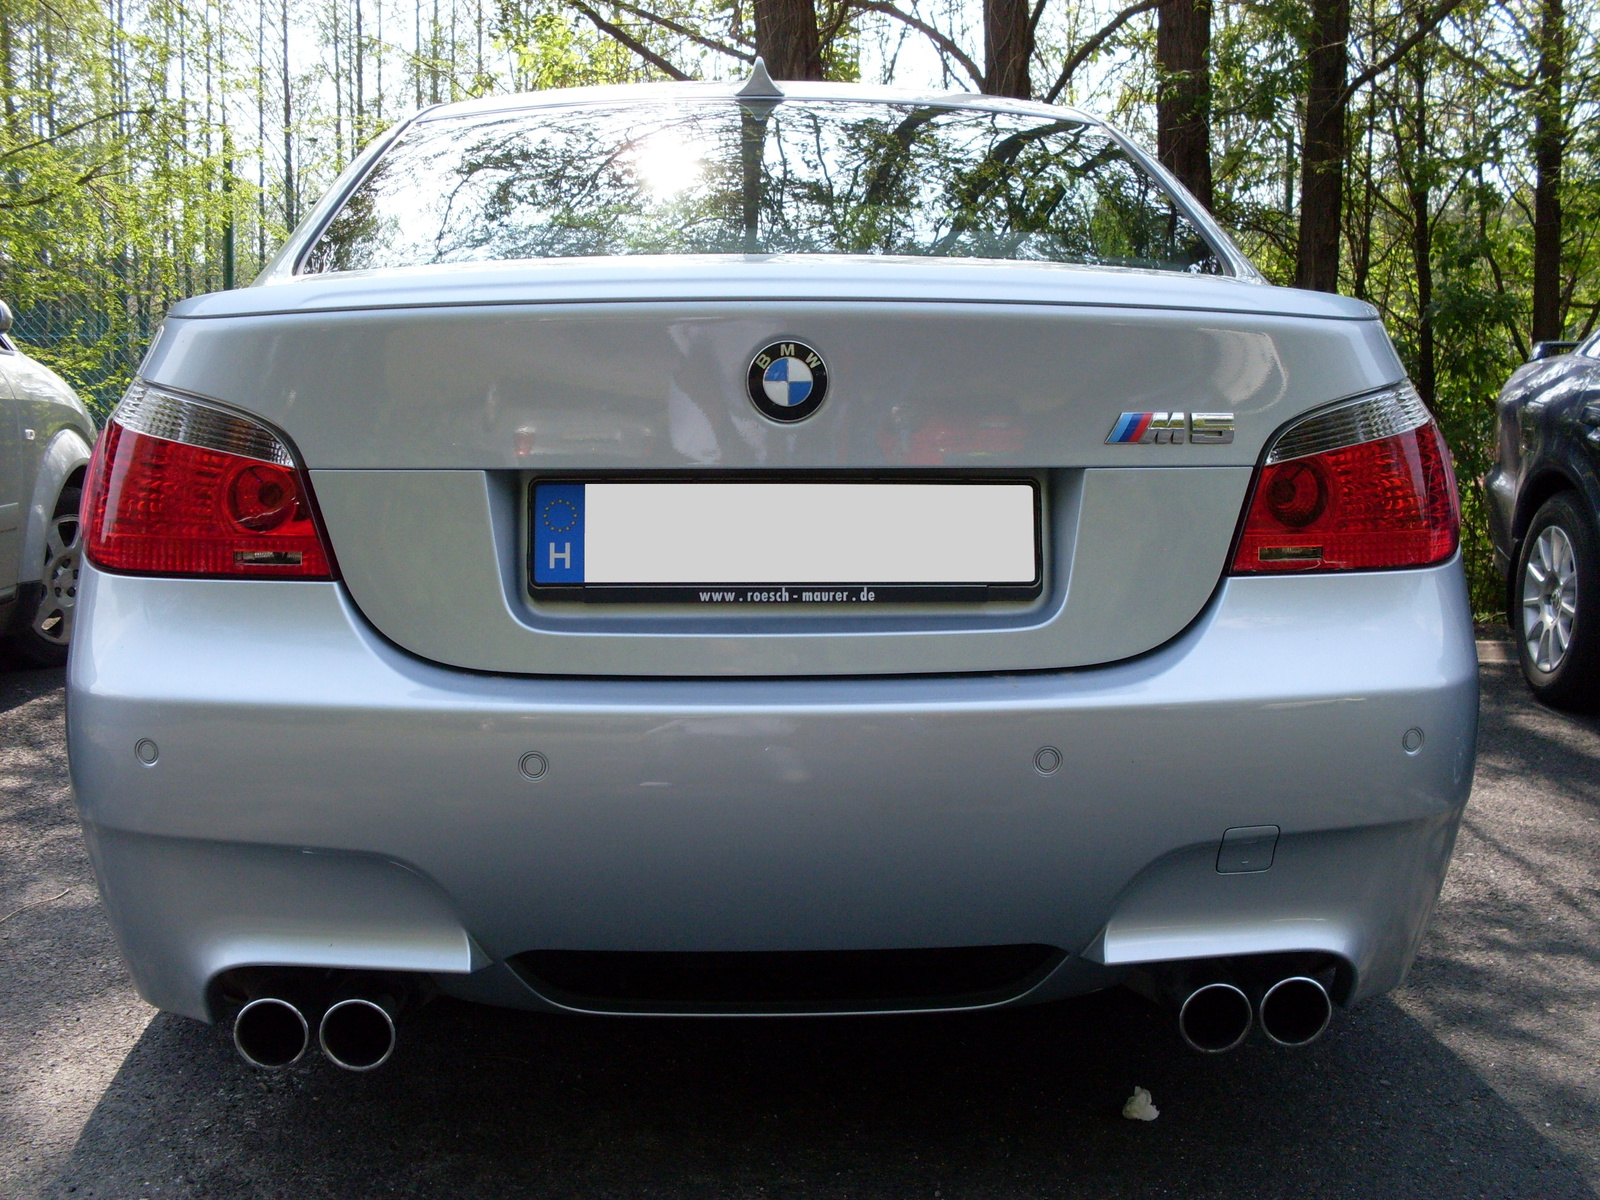 BMW M5 (e60)